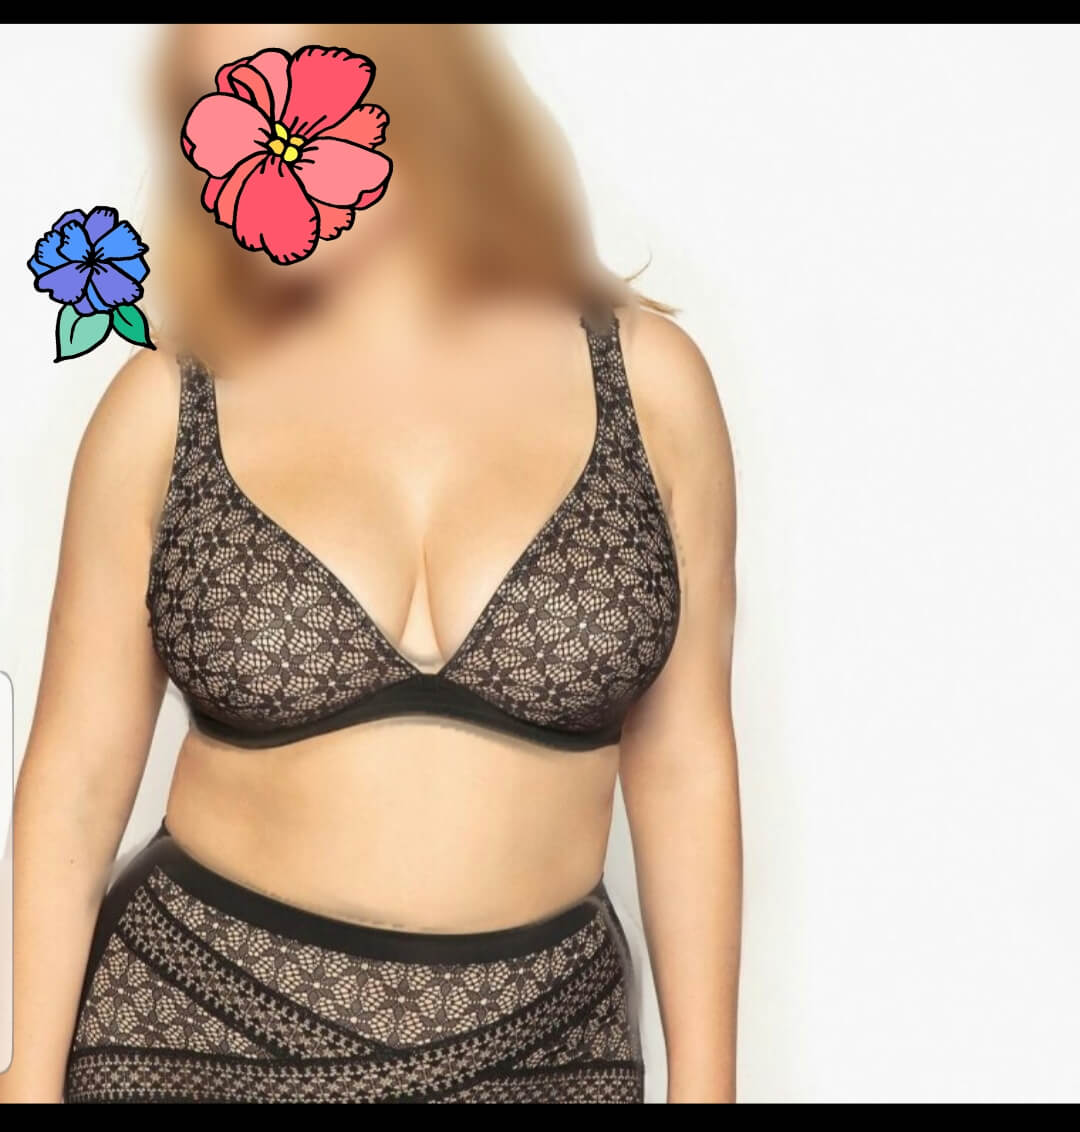 מארחת ליברלית מבינה עניין מבנה גוף סקסי – תל אביב